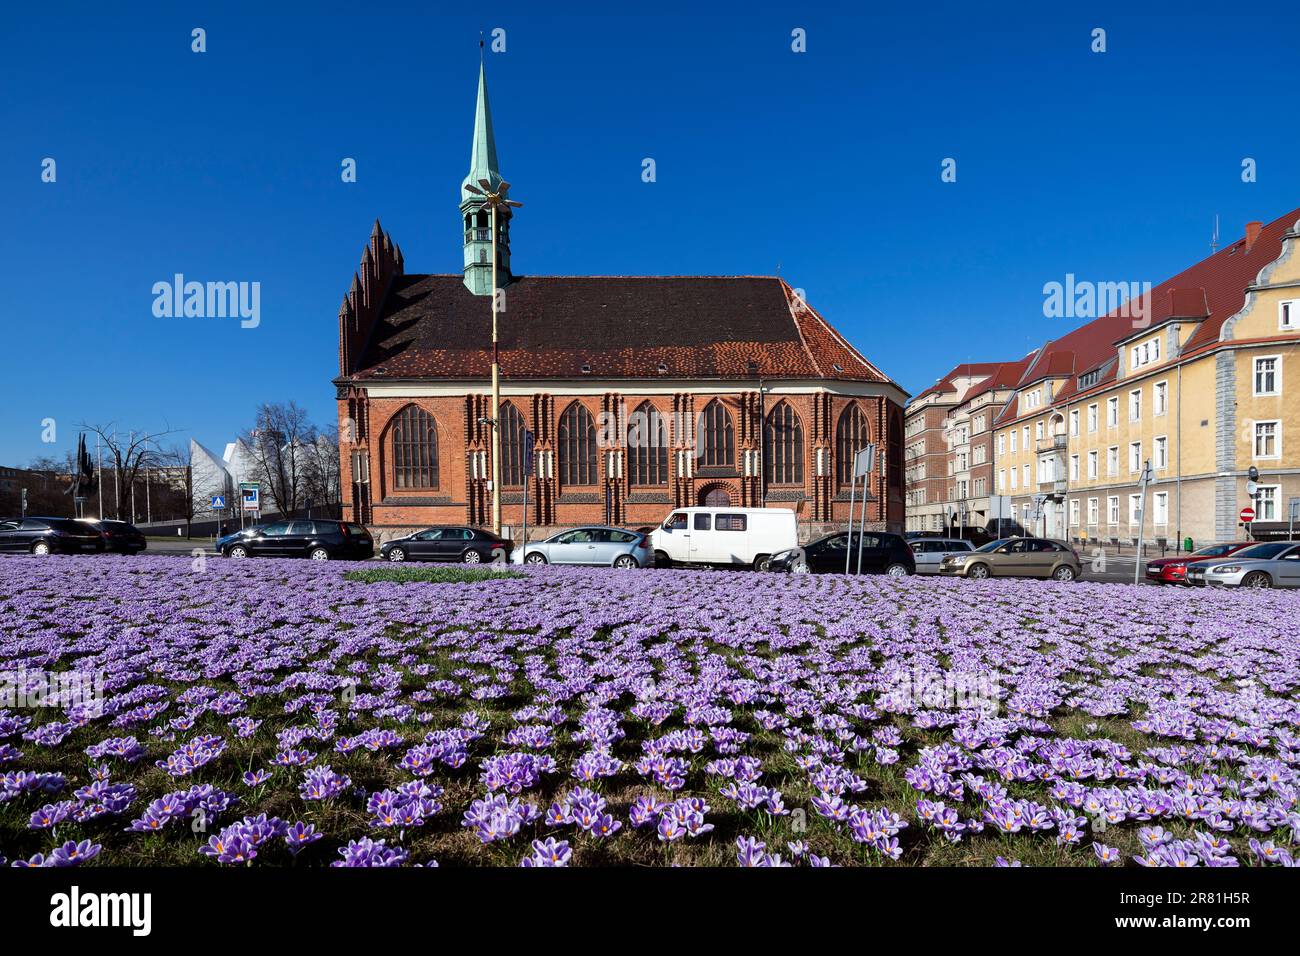 Polen, Szczecin - Polnischer Frühling, blühende Krokusse, violette Blumen im Stadtpark und in der Flugzeuggasse, wunderschöner Frühling Stockfoto